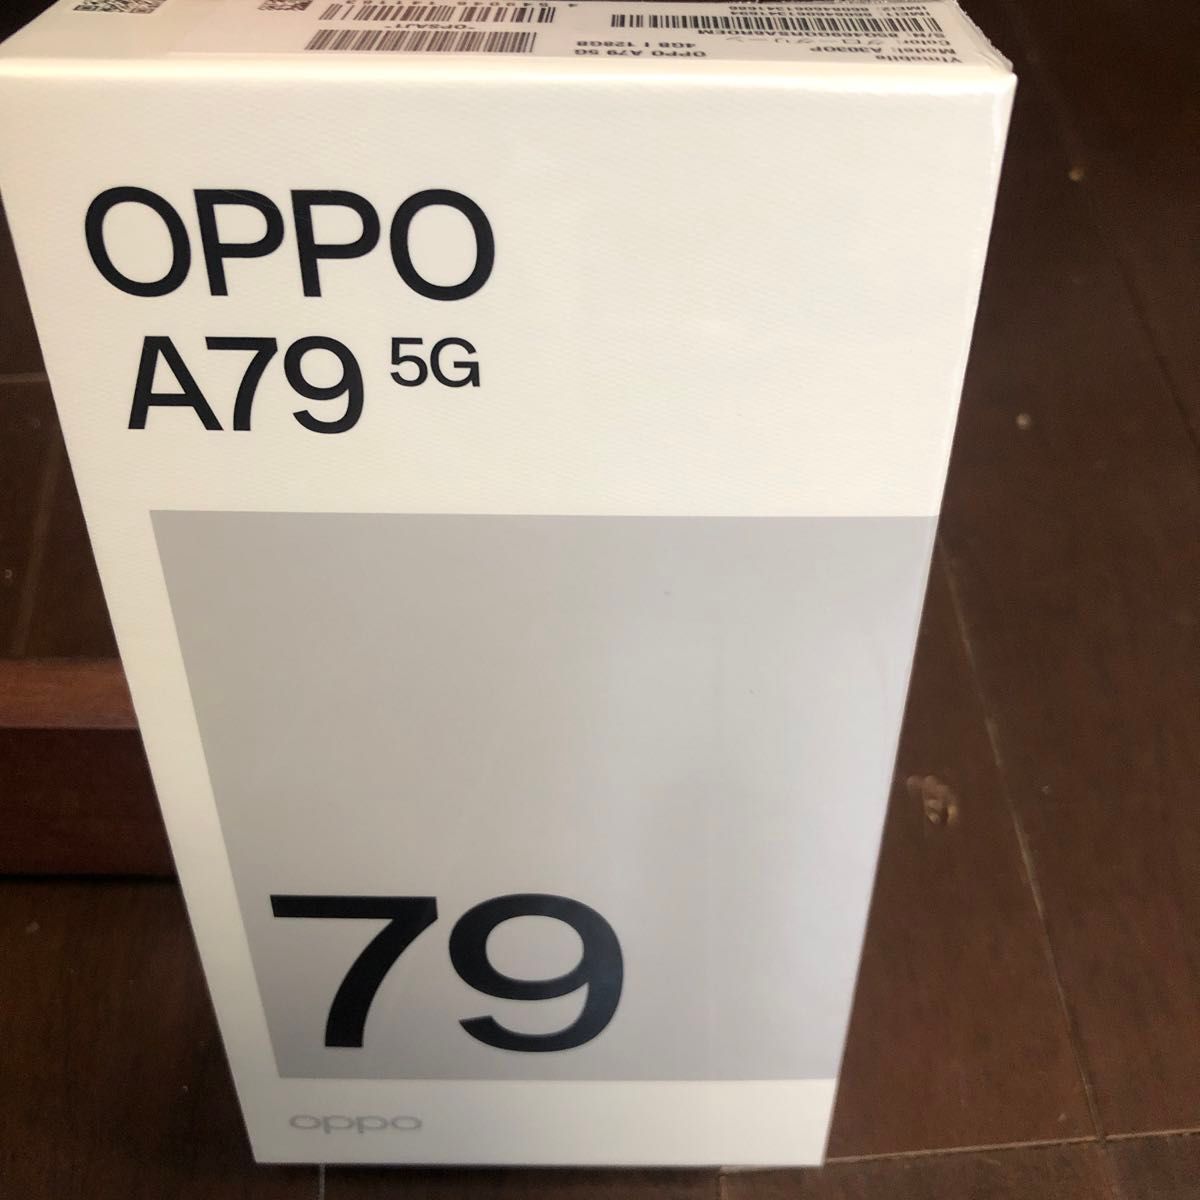 OPPO オッポ A79 5G Y! mobile版 128GB グローグリーン SIMフリー